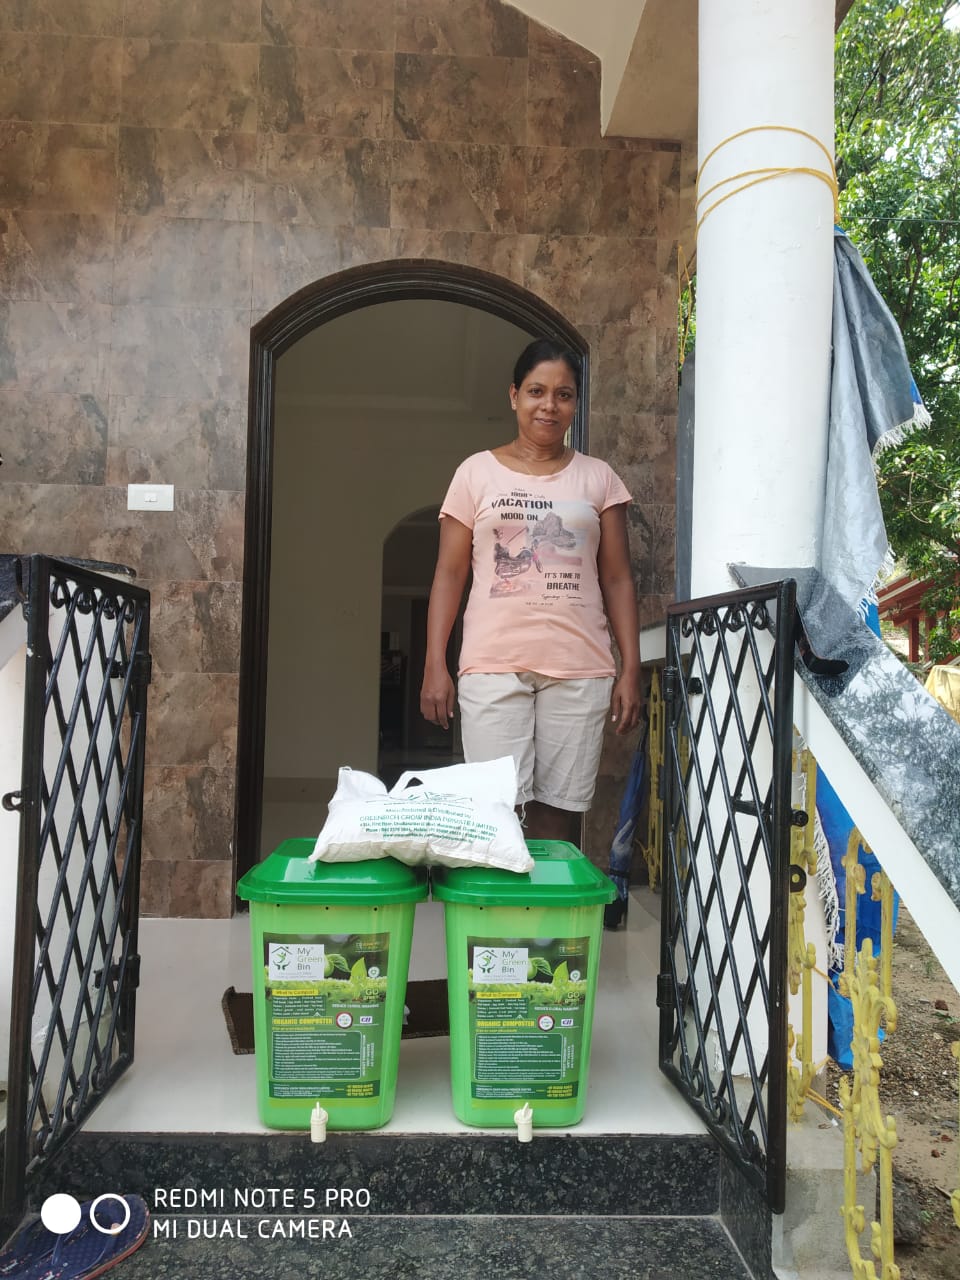 My Green Bin 25 Ltr Home Composter Installed @ Betalbatim, Goa.